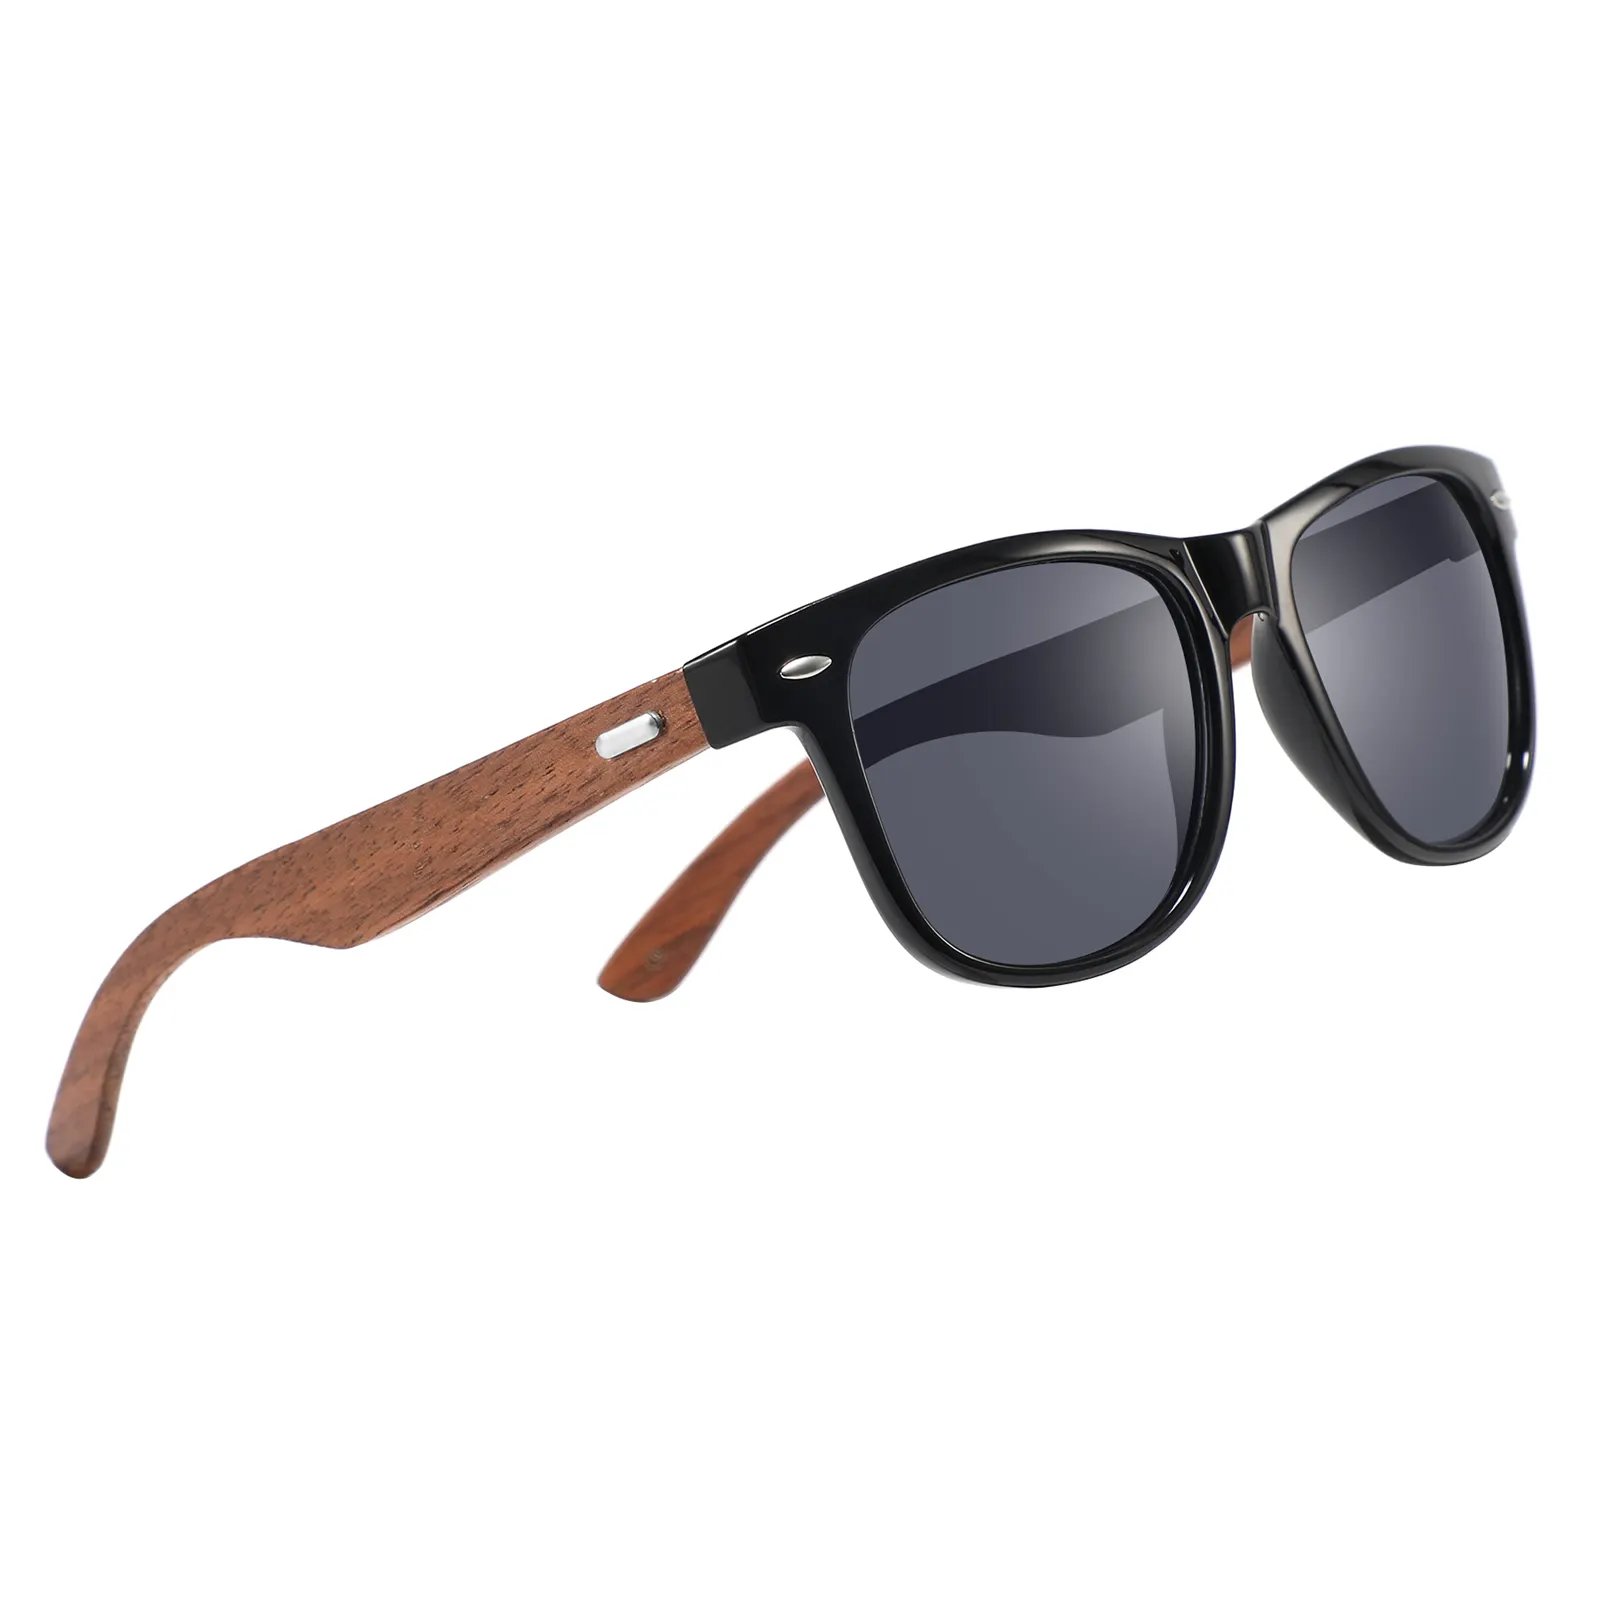 Хорошего качества, деревянные солнцезащитные очки с петлями, оптовая продажа, классические деревянные солнцезащитные очки из орехового дерева